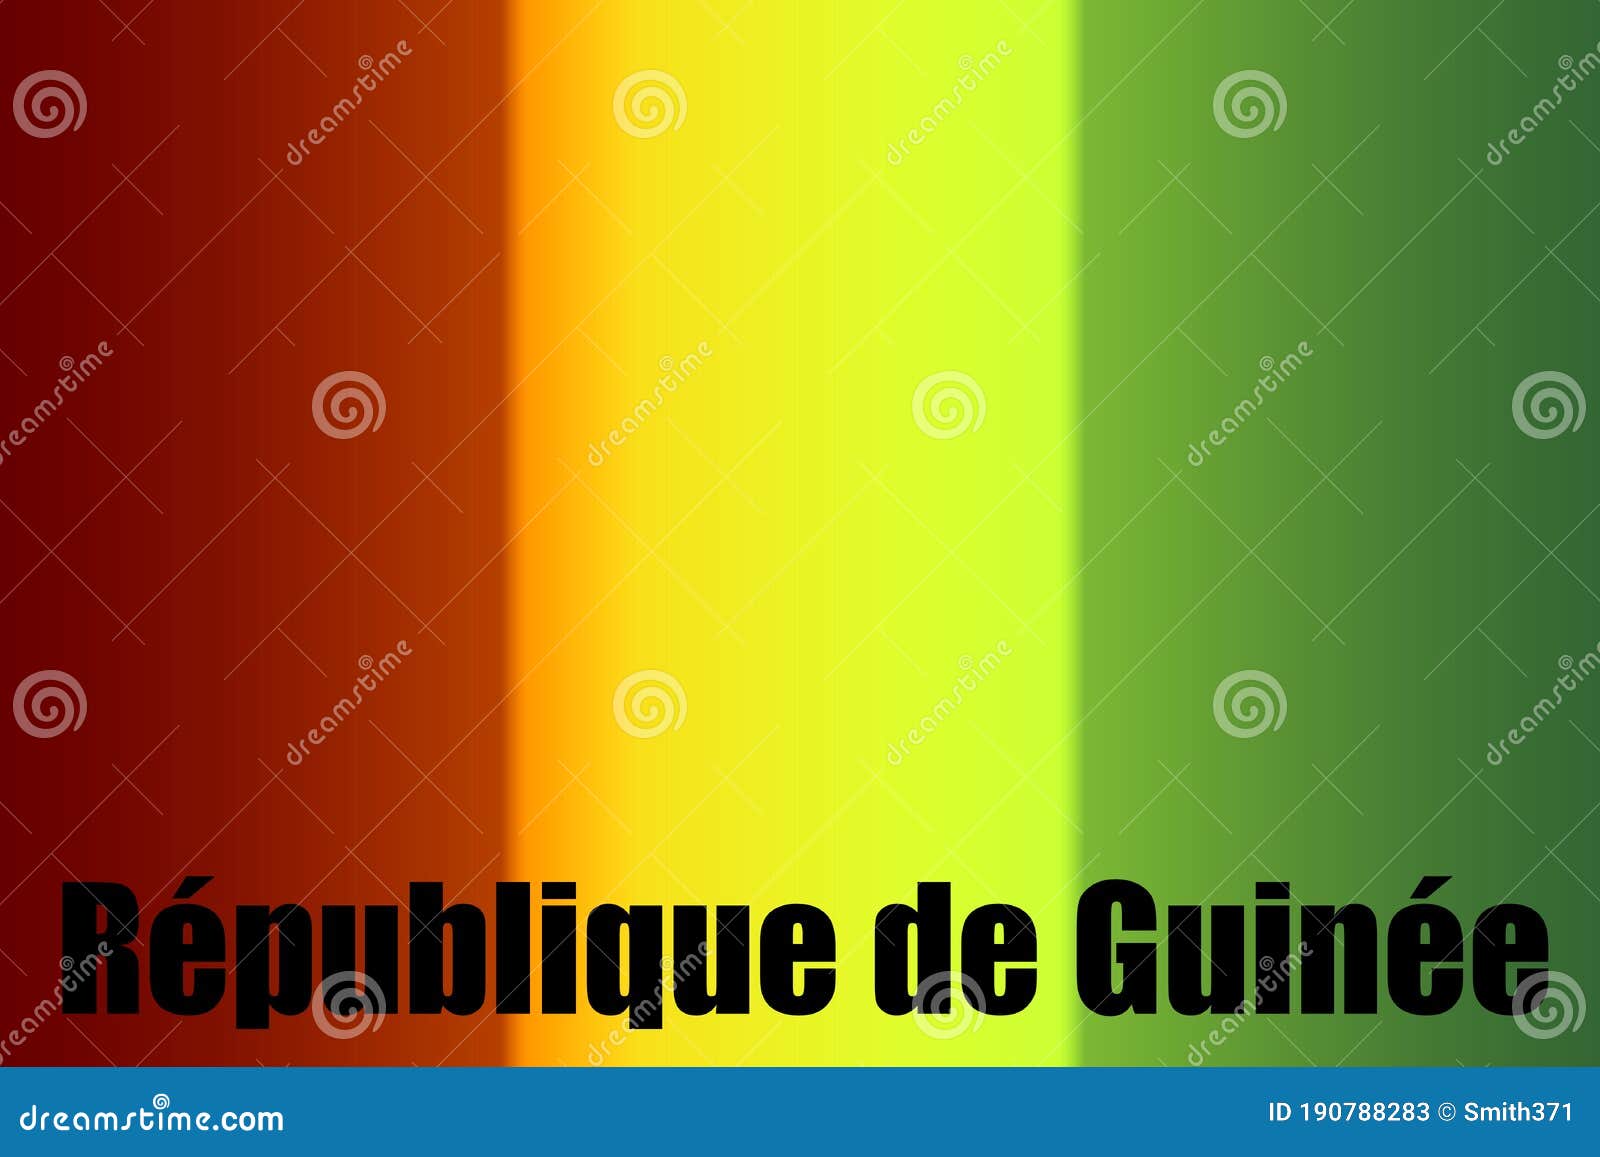 Chữ đen REPUBLIC of GUINEA trên nền gradient nổi bật và được thiết kế hợp lý để thu hút sự chú ý của người xem. Sự kết hợp của hai yếu tố giúp tăng thêm tính thẩm mỹ cho tác phẩm nghệ thuật. Hãy cùng thưởng thức hình ảnh và cảm nhận sự hoàn hảo từ sự pha trộn màu sắc.